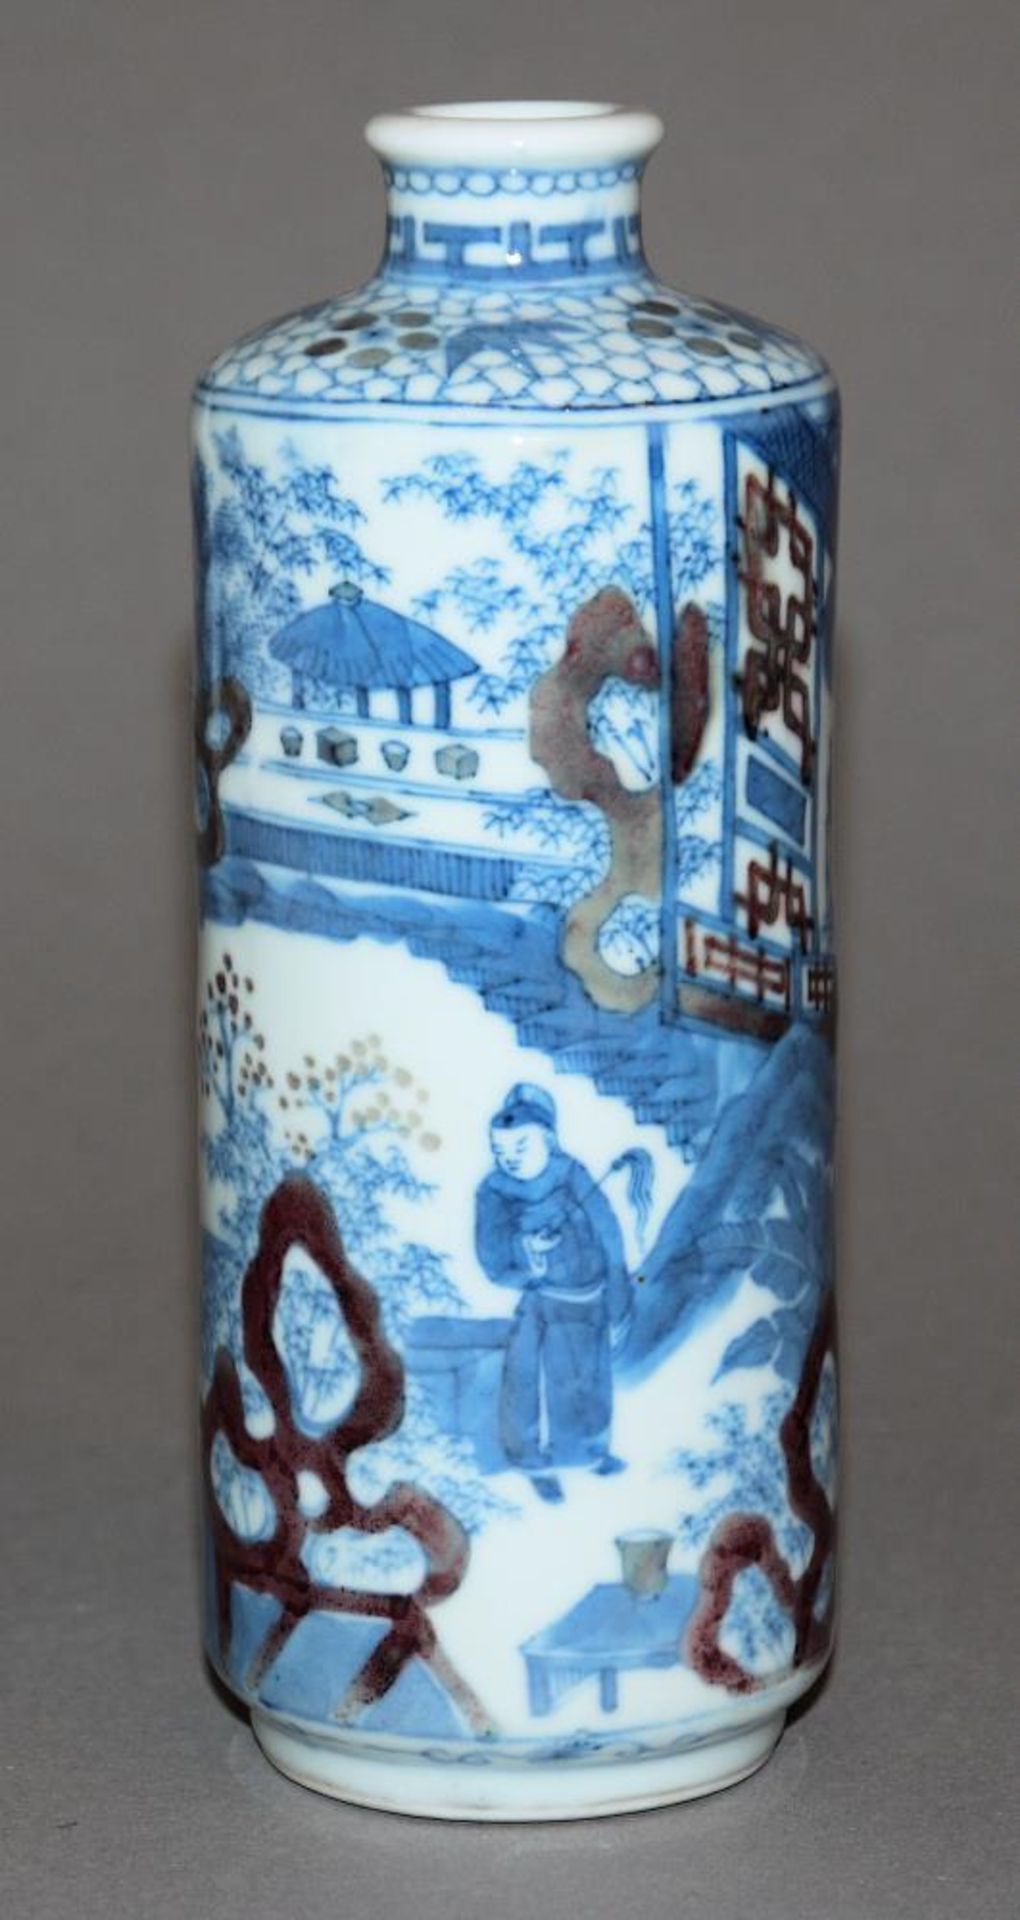 Tisch-Snuffbottle aus Blauweiß-Porzellan, späte Qing-Zeit, China 19. Jh. Zylinderflasche mit